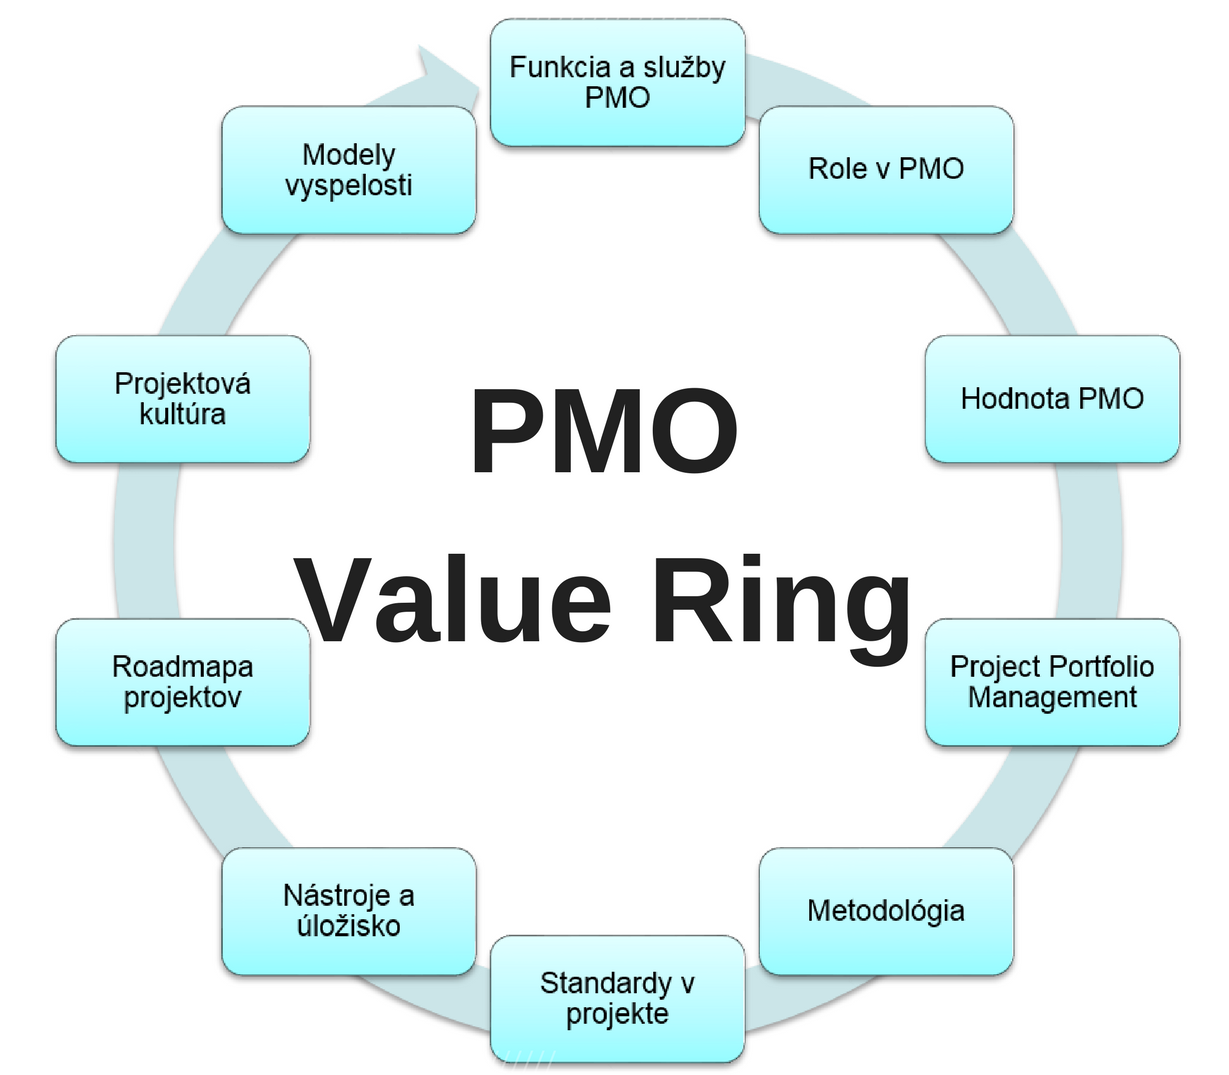 PMO Value Ring - riadenie projektového portfólia